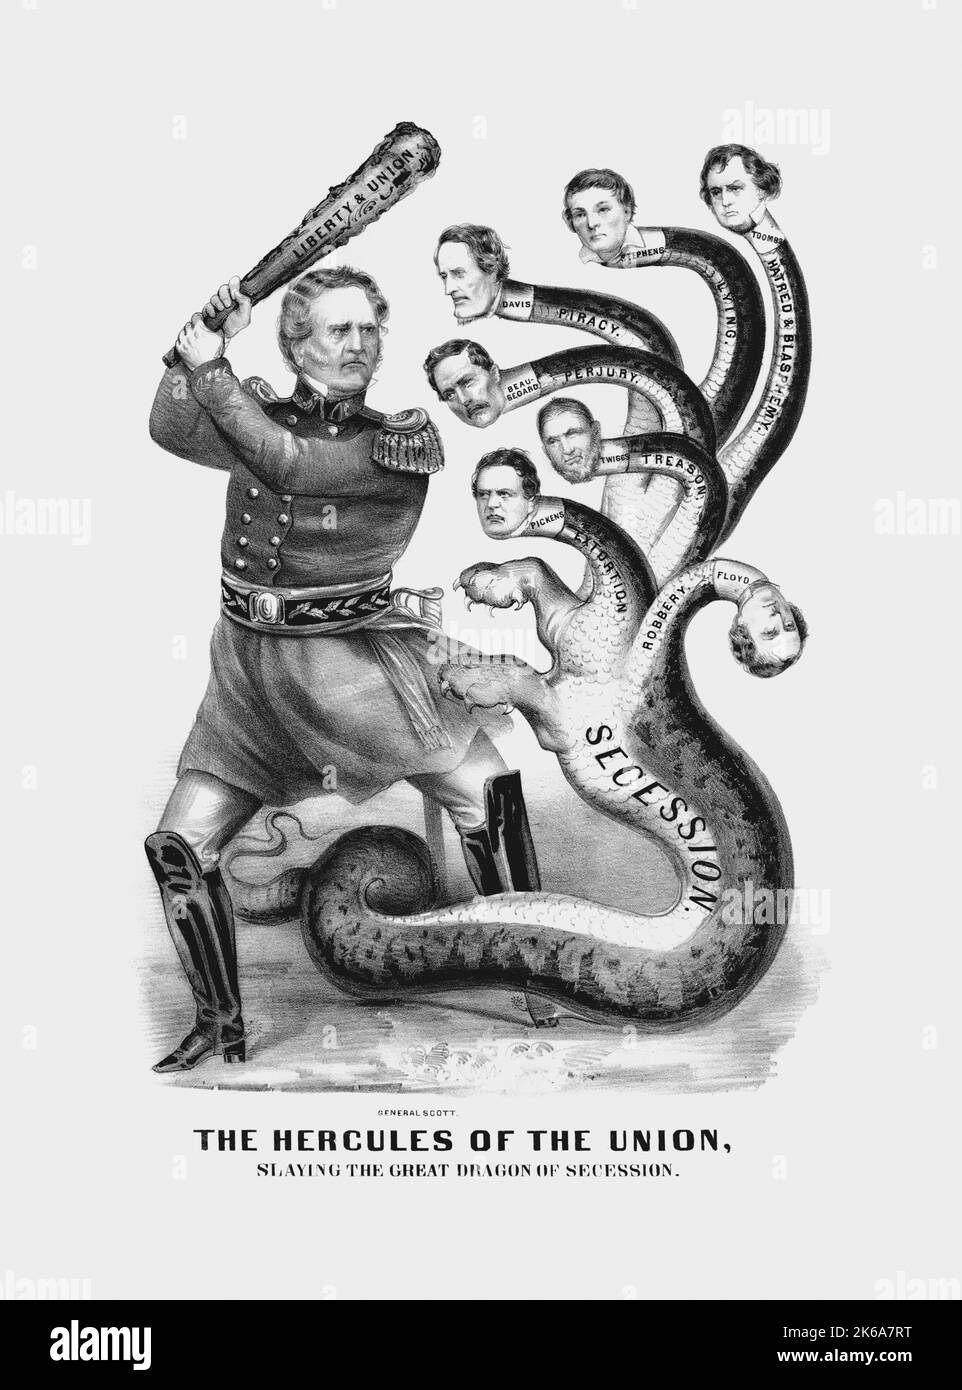 General Winfield Scott von der Union Army, dargestellt als Herkules, der den großen Drachen der Sezession tötet. Stockfoto